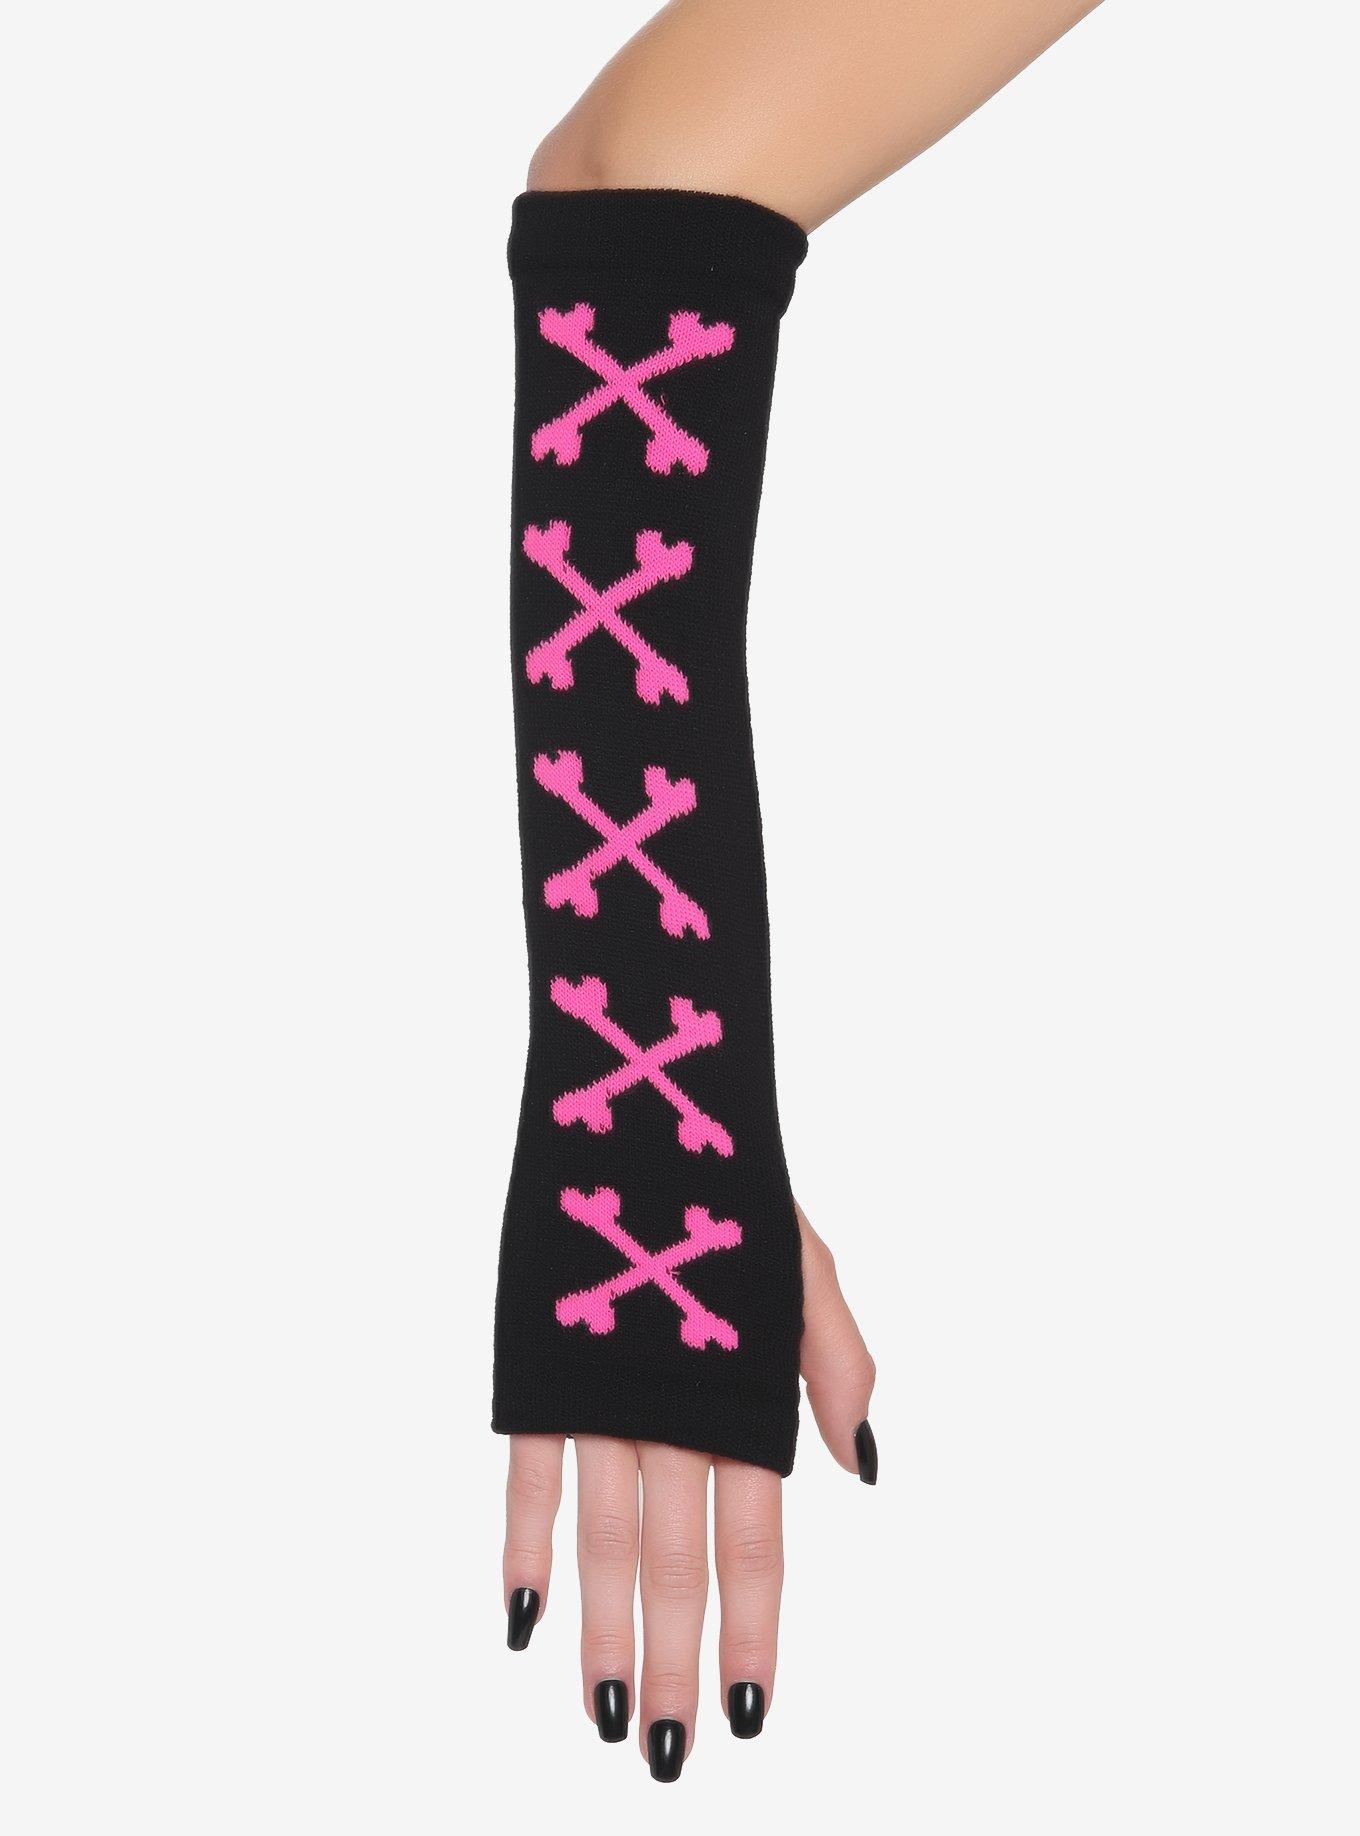 Black & Pink Crossbones Arm Warmers, , alternate